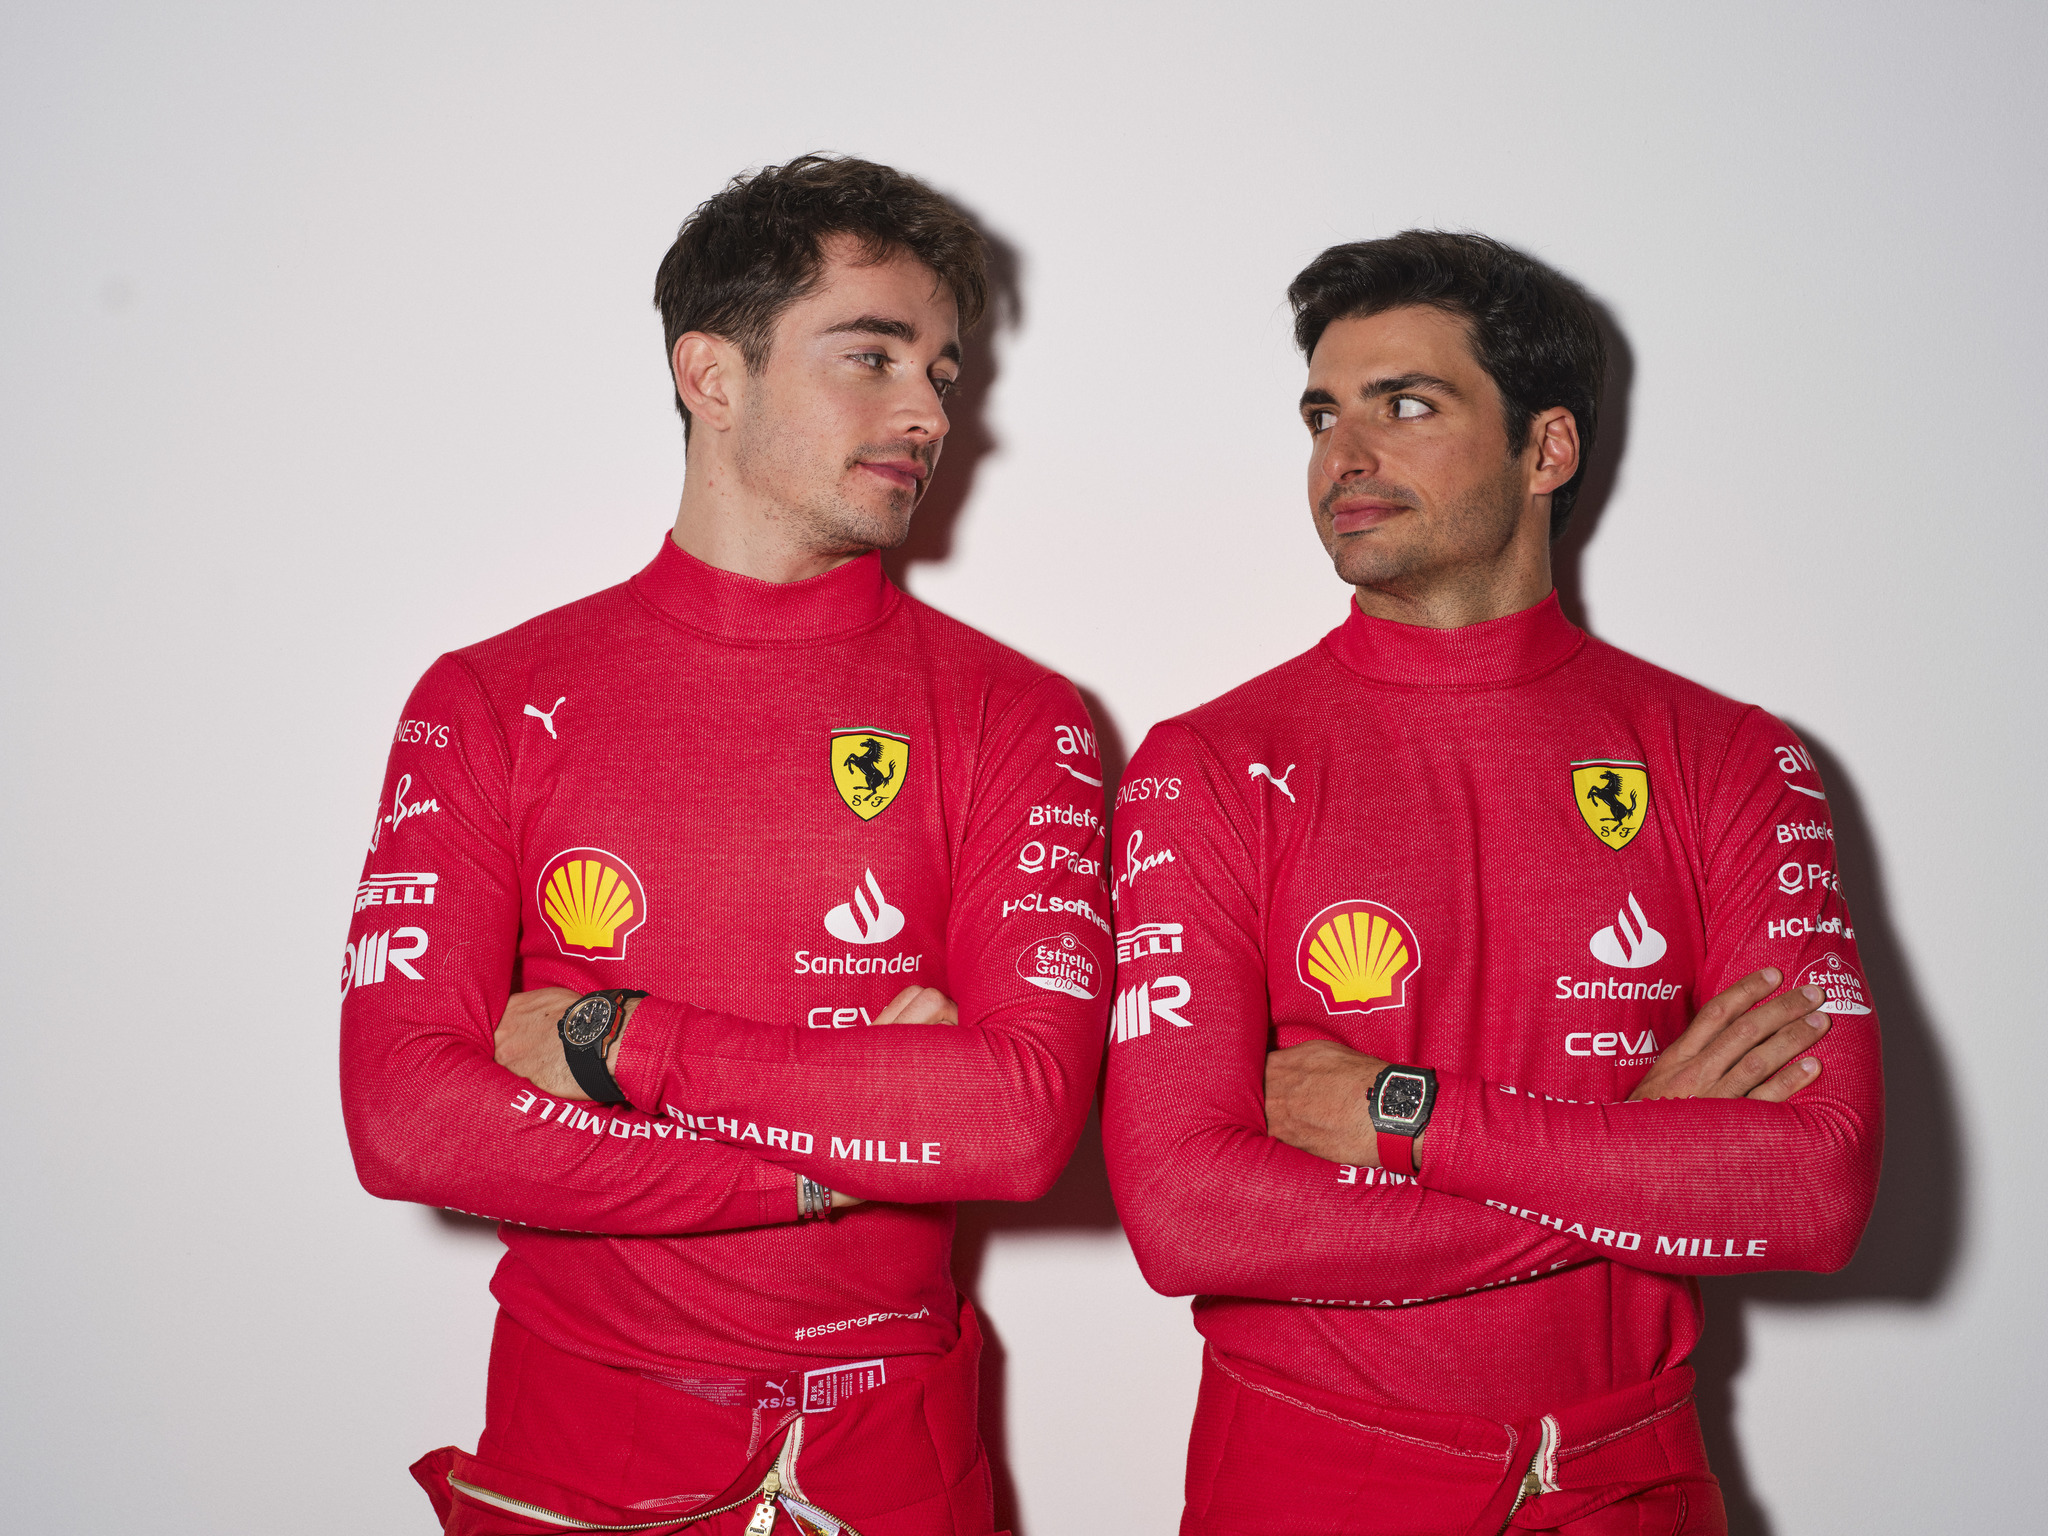 Carlos y Charles, en una imagen promocional de Ferrari.